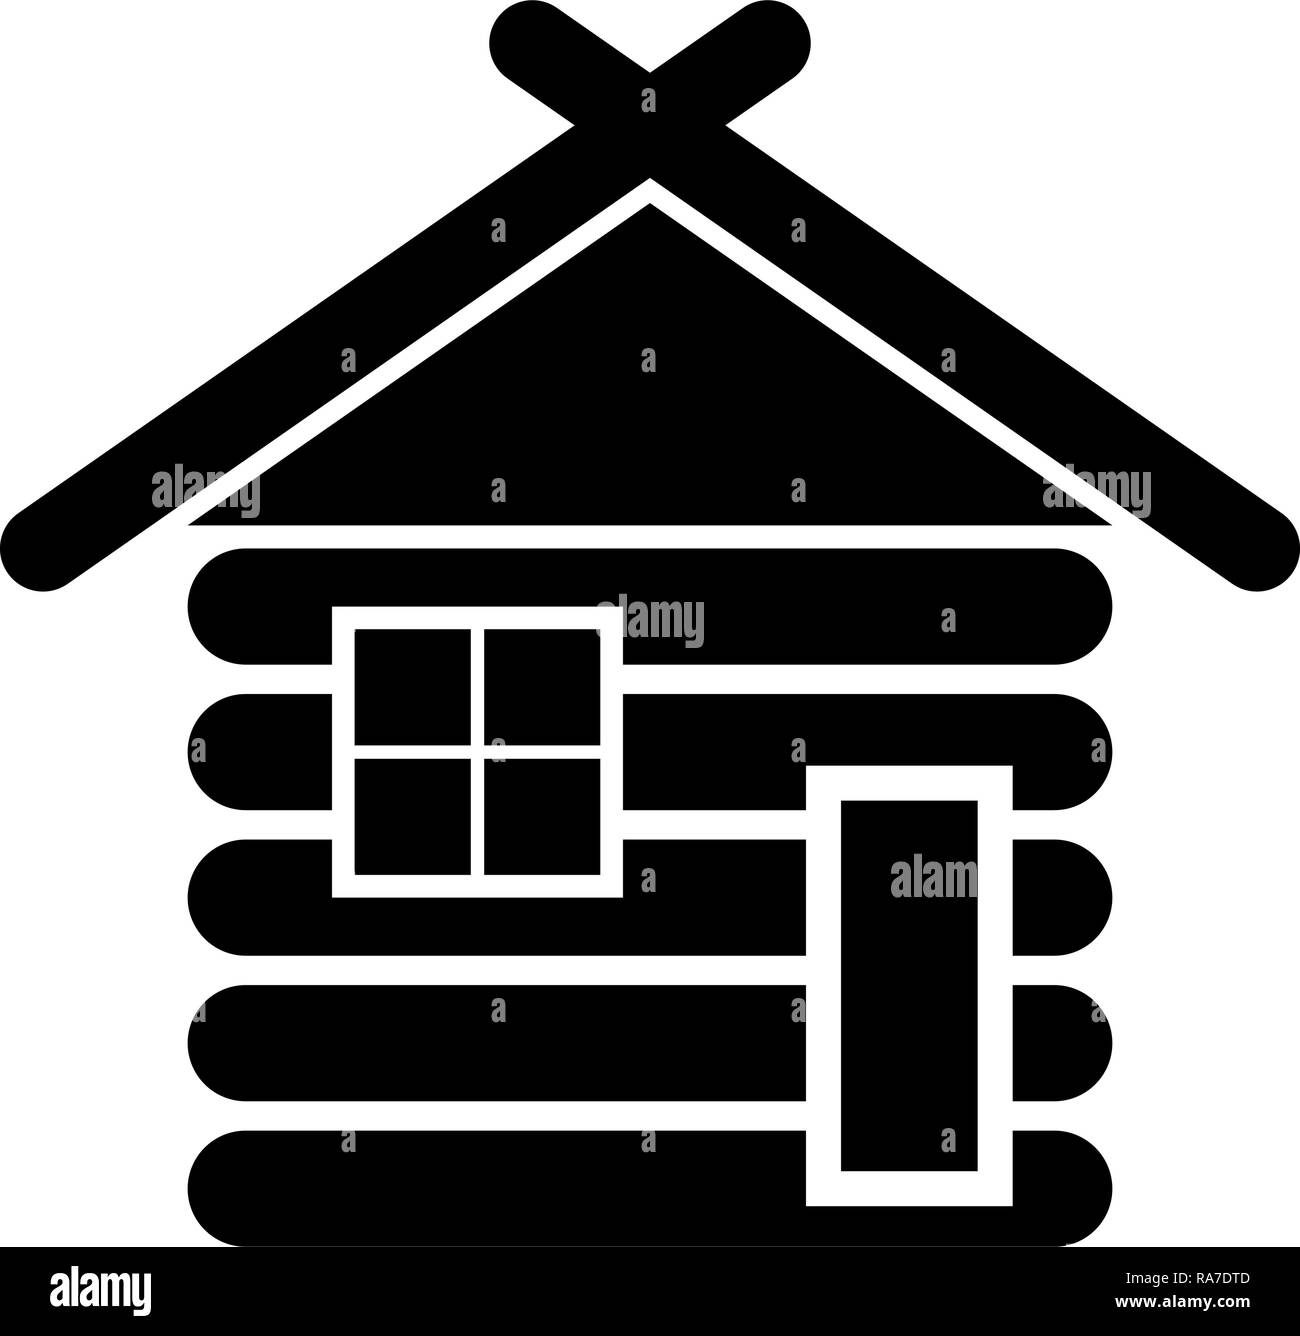 Hölzerne Haus Scheune mit Holz modulare Kabinen Holzhütte modulare Häuser Symbol Farbe schwarz Vektor I Stil einfach Bild anmelden Stock Vektor